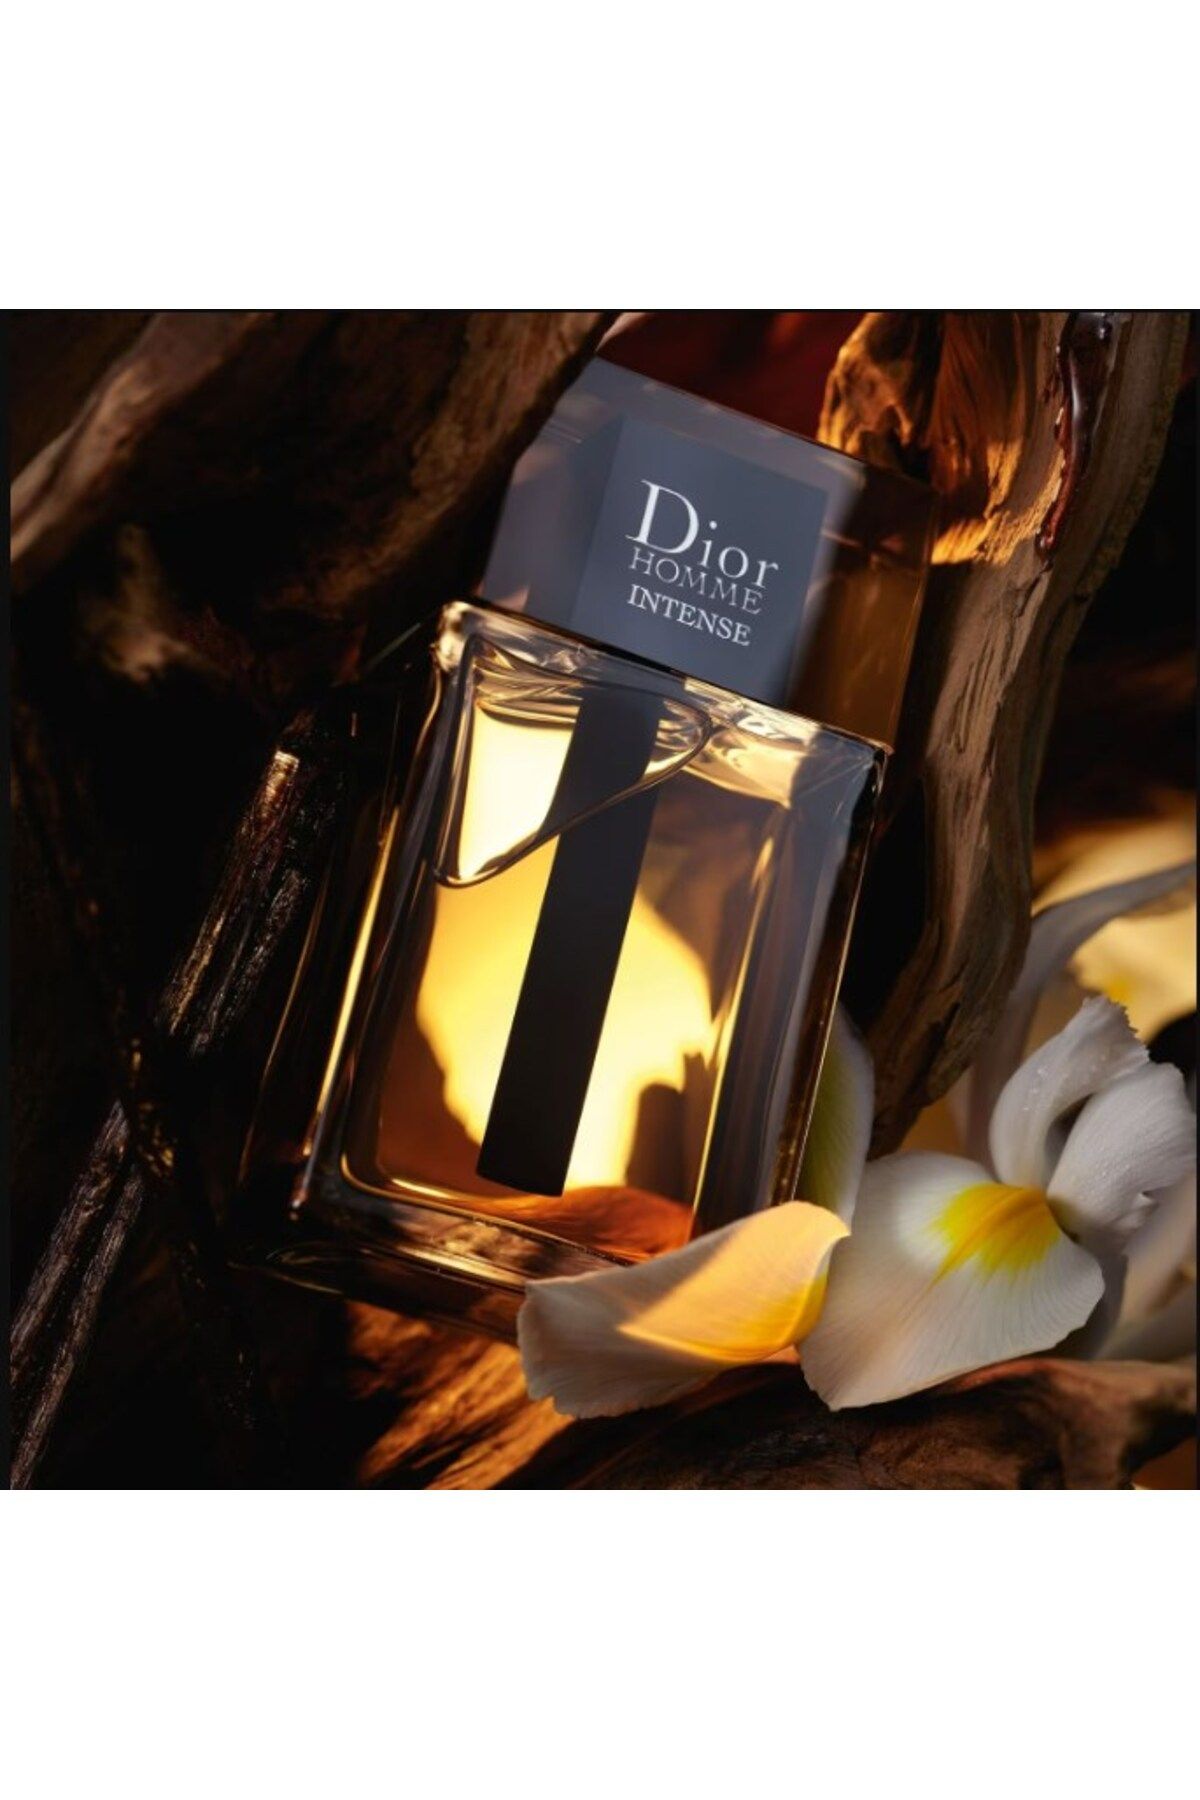 Dior مردانه مداوم ادو پرفیوم شجاع و بخشنده 50 میلی لیتر